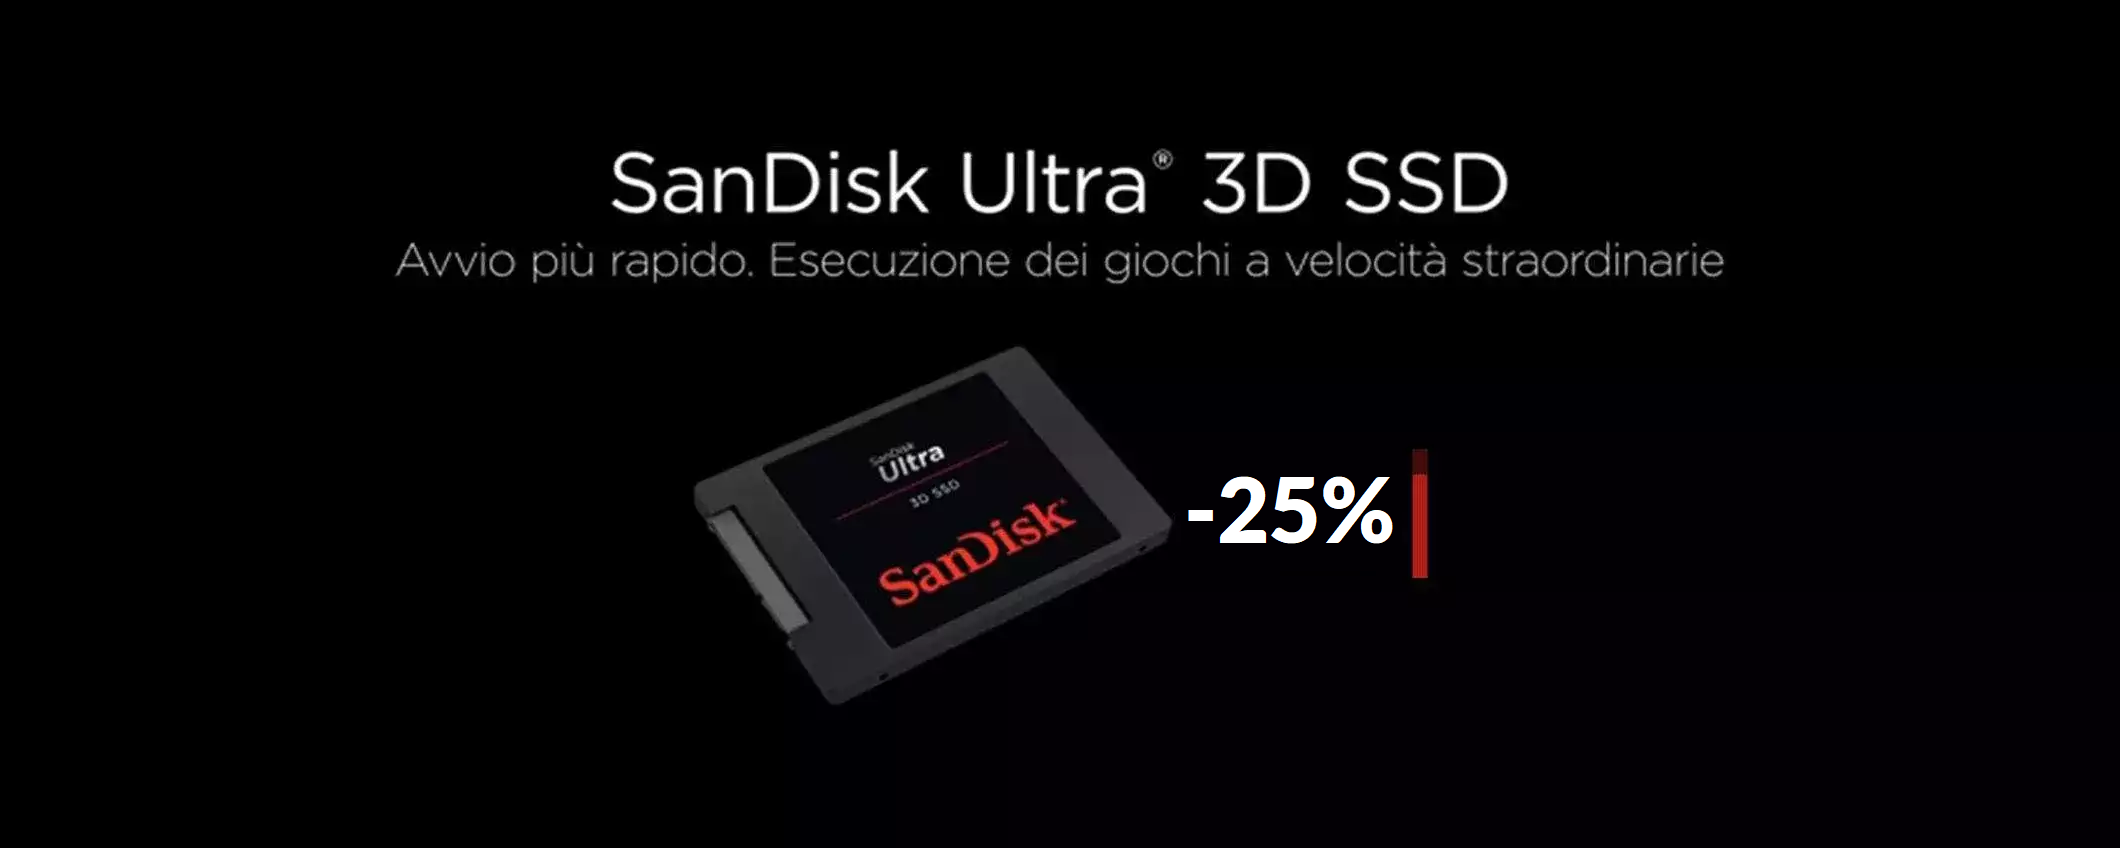 SSD SanDisk 2TB: oggi è tuo al prezzo più basso di sempre (-25%)